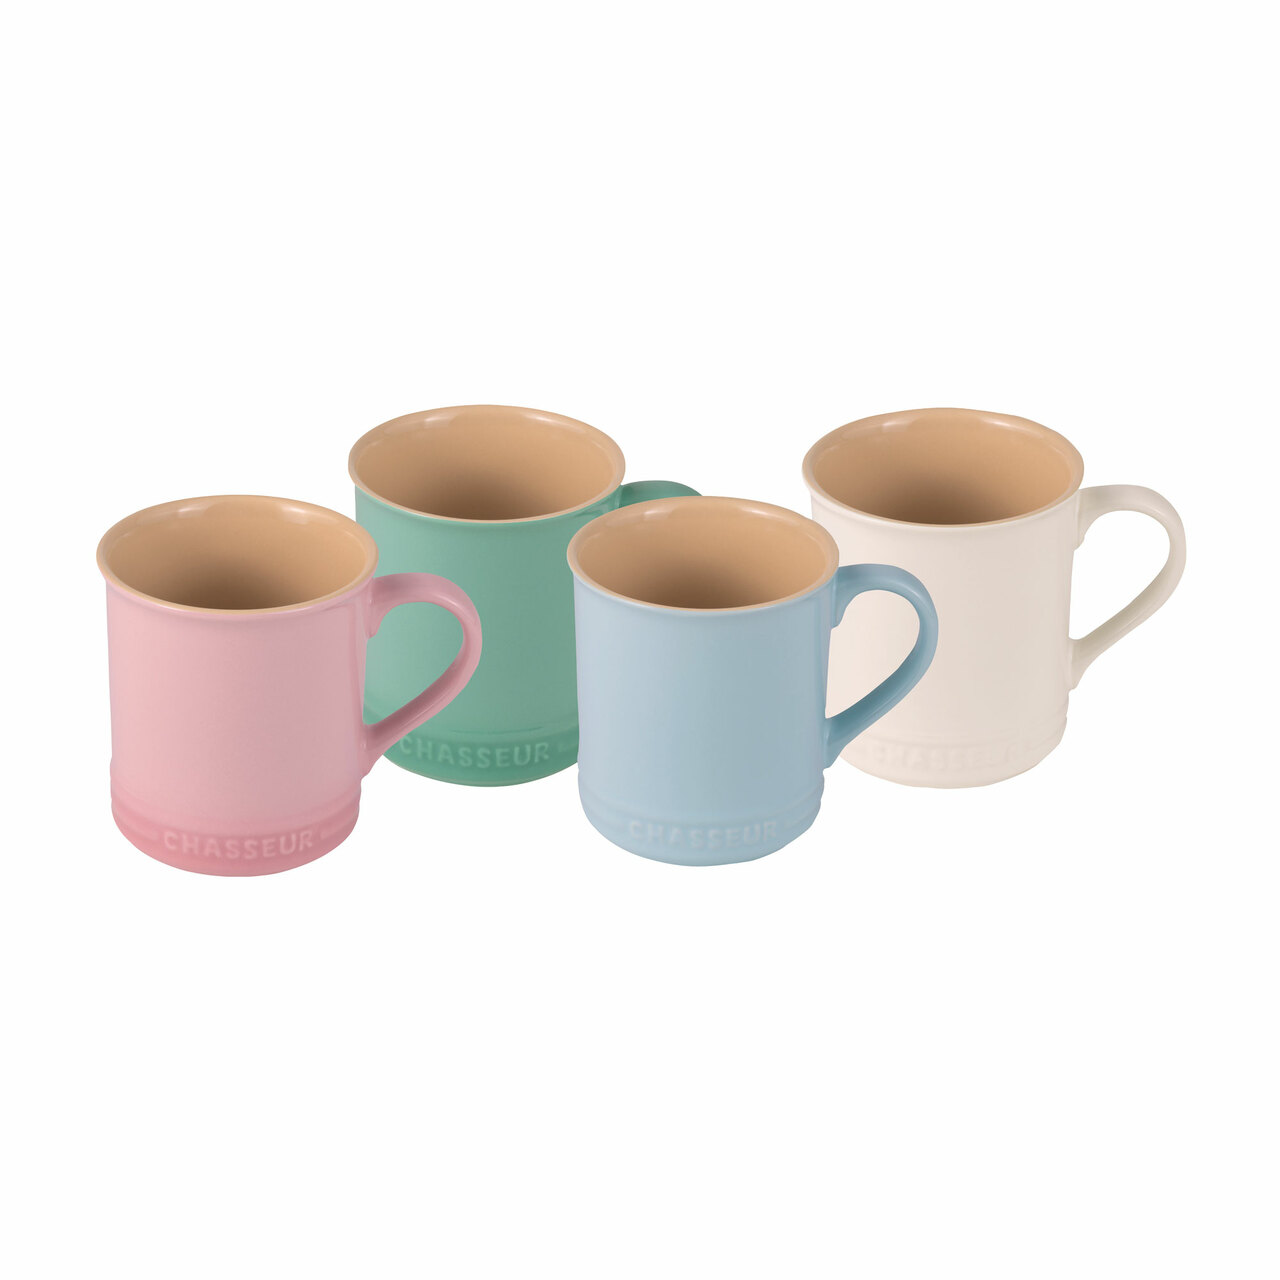 Chasseur Macaron Collection 4-Piece Mug Set